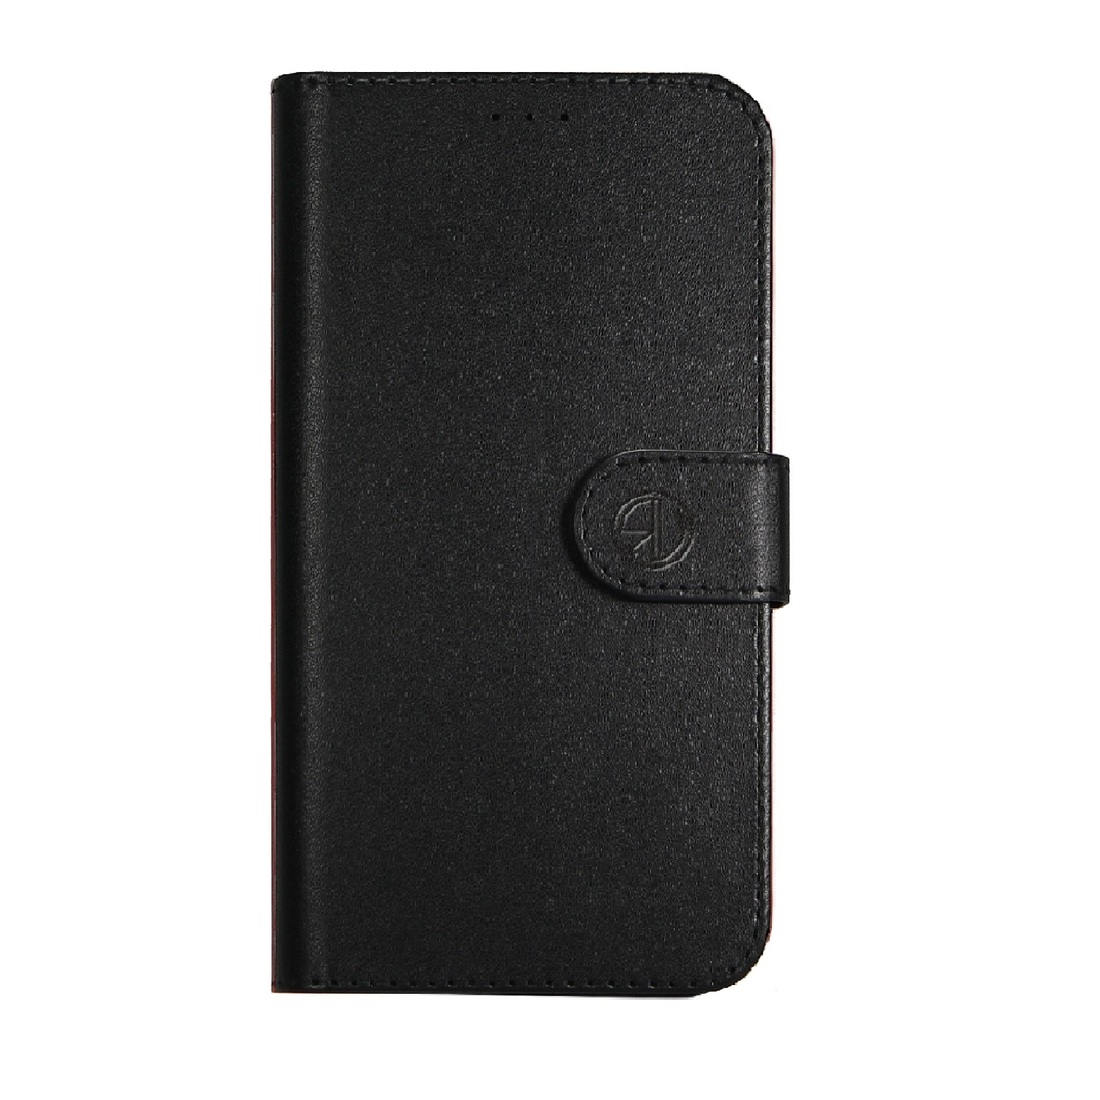 Super Wallet Case iPhone 5 SE Zwart